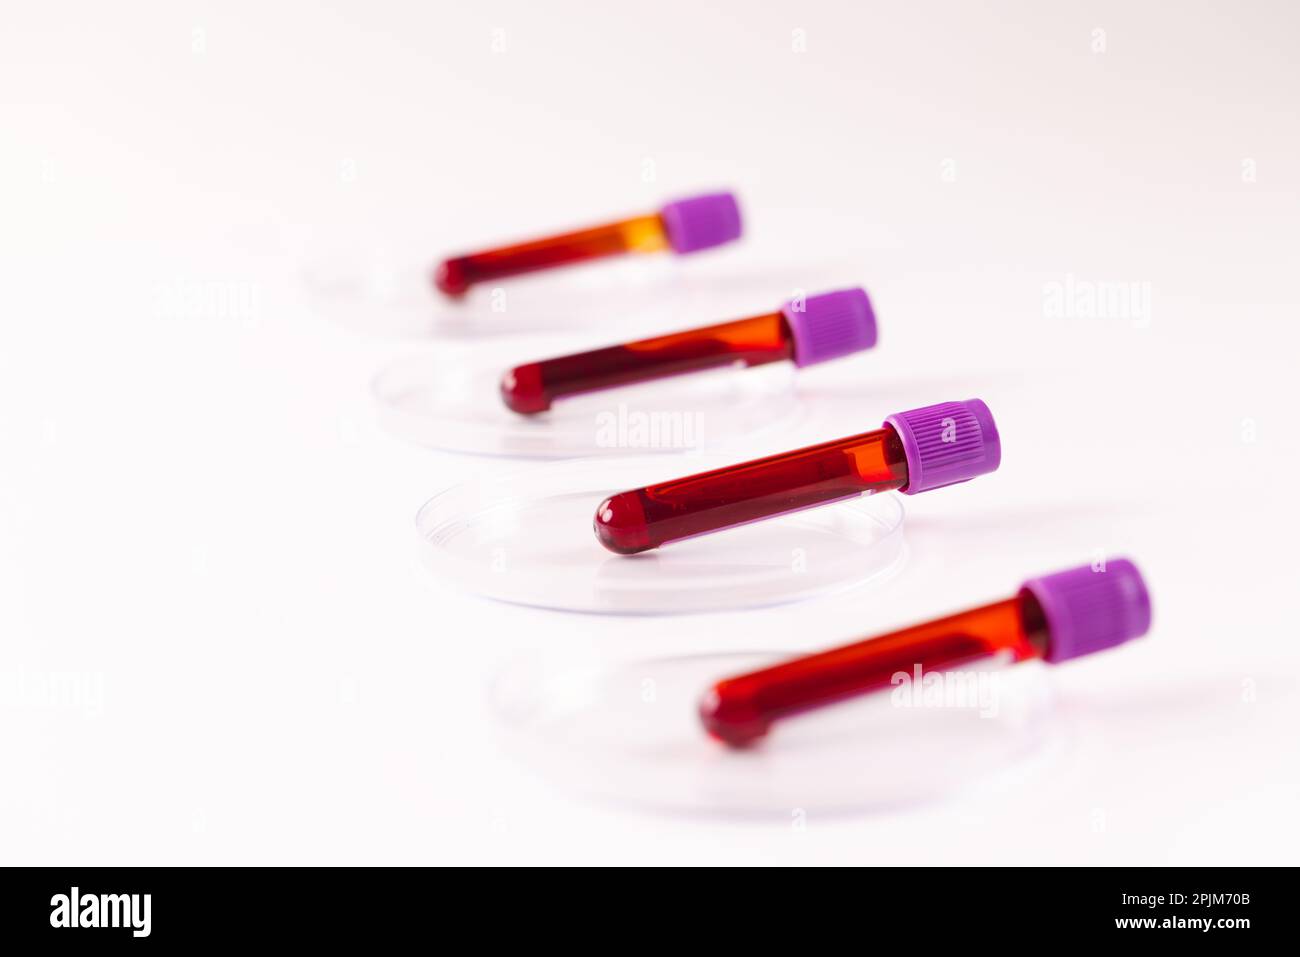 Rangée de tubes d'échantillons de sang dans des boîtes de Petri, sur fond blanc Banque D'Images